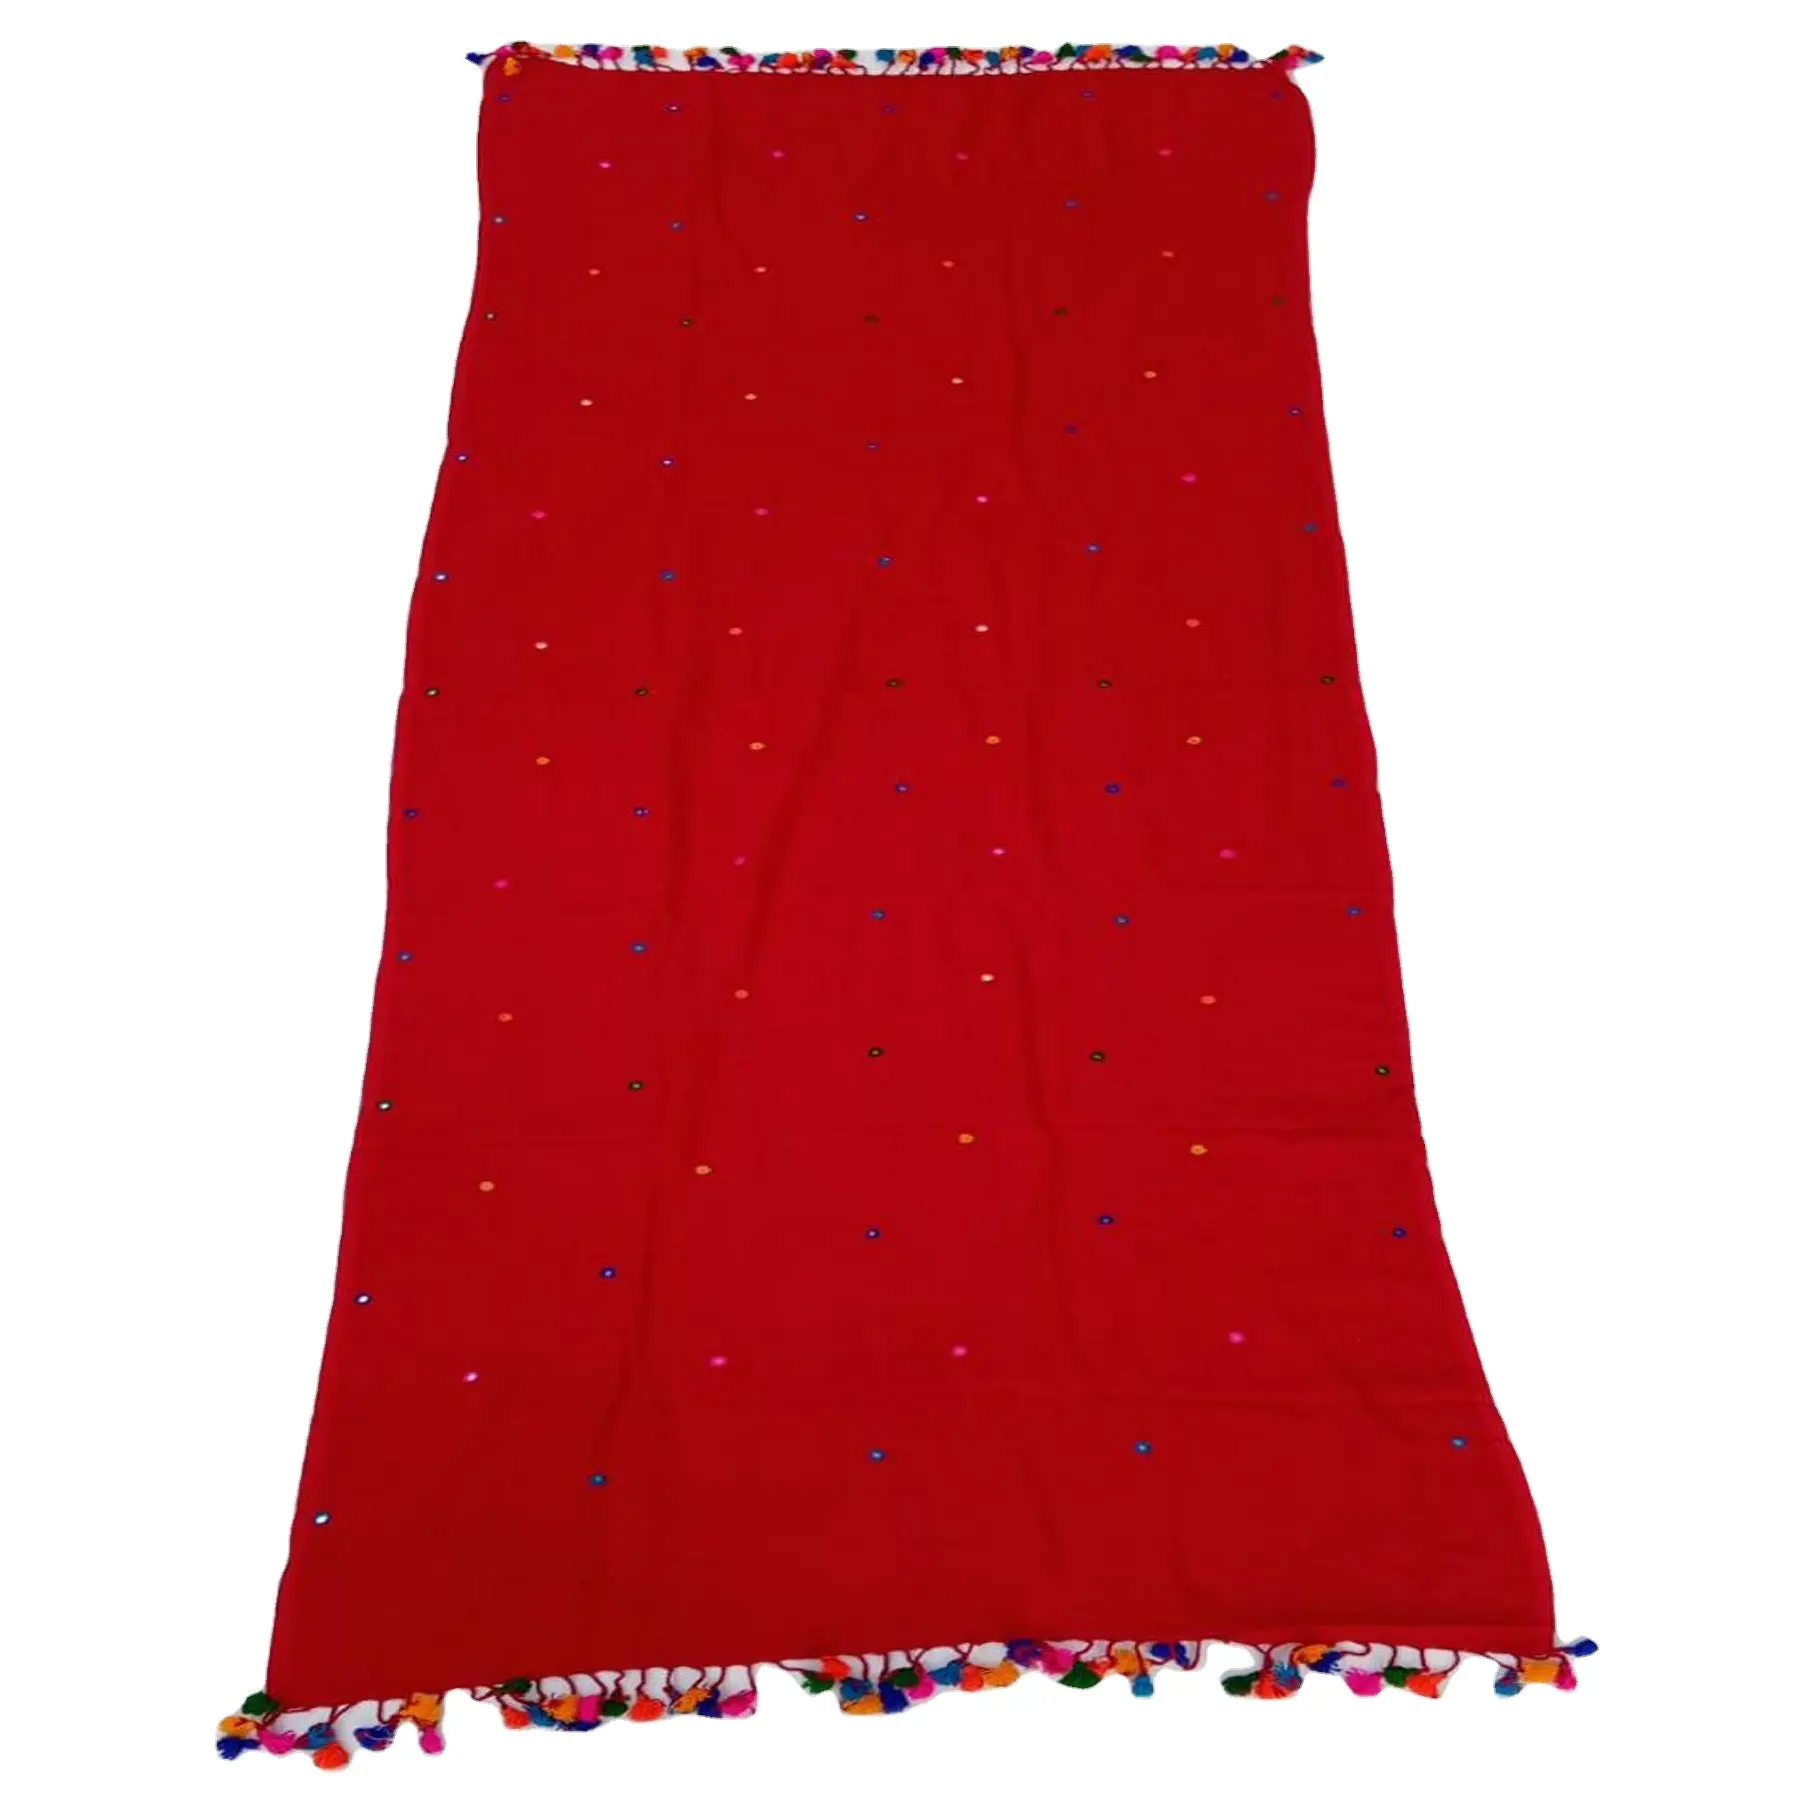 Tissu brodé uni rouge 100% coton rayonne dernière collection de foulards de styliste pour femmes multicolore mignon gland doux au toucher